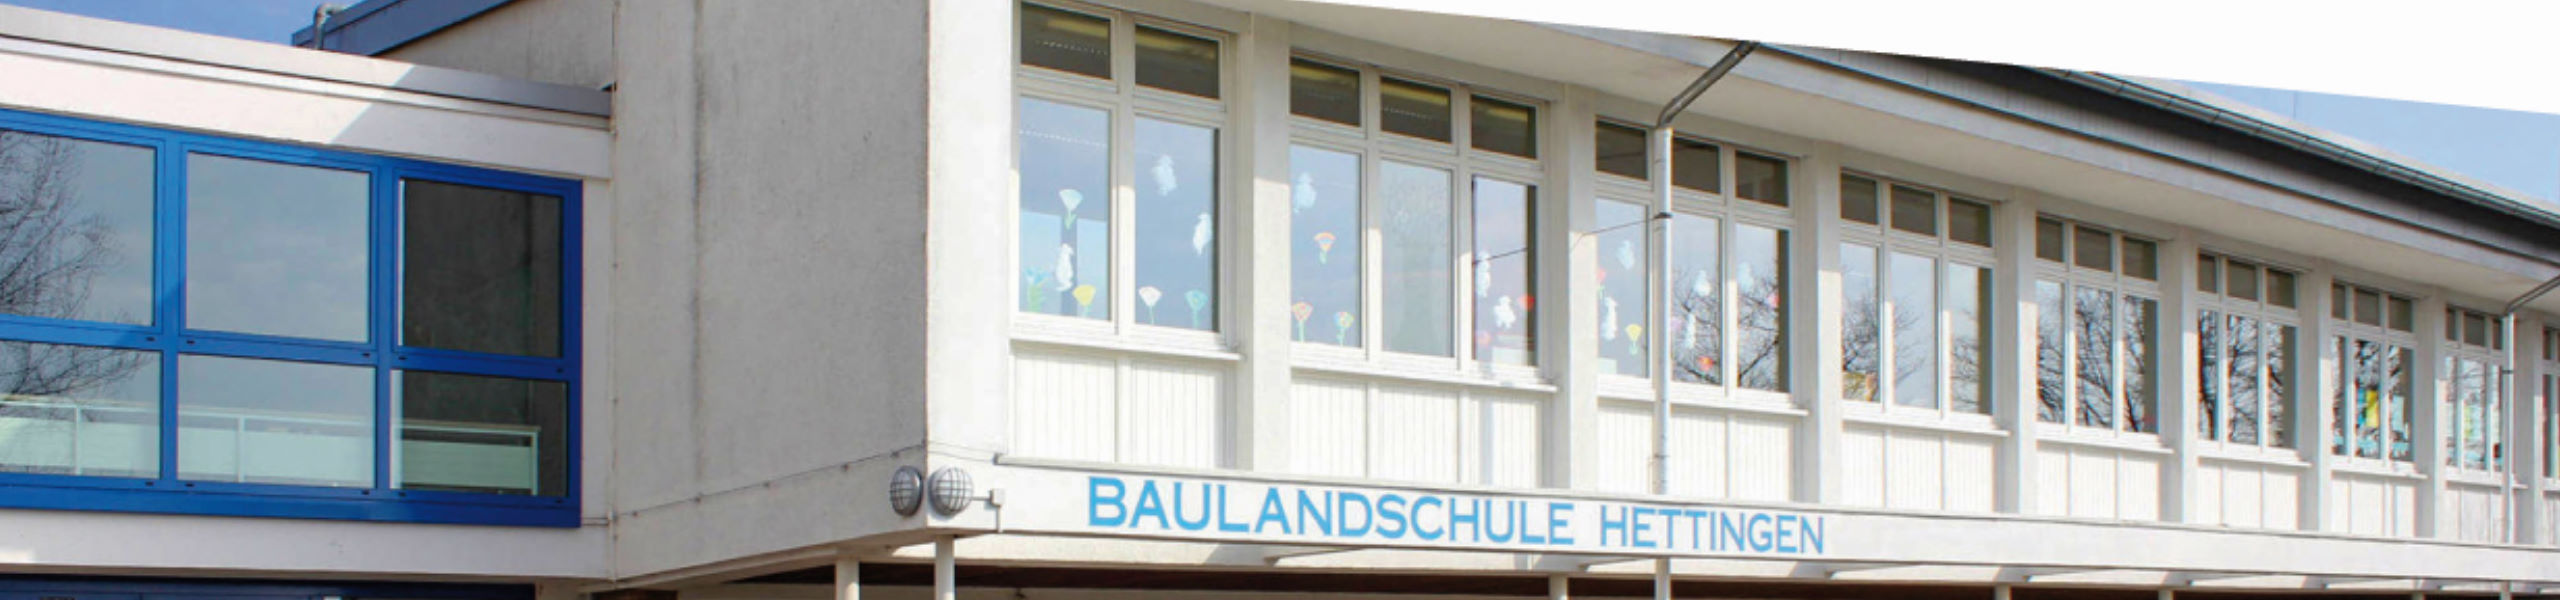 Baulandschule Hettingen - Downloads